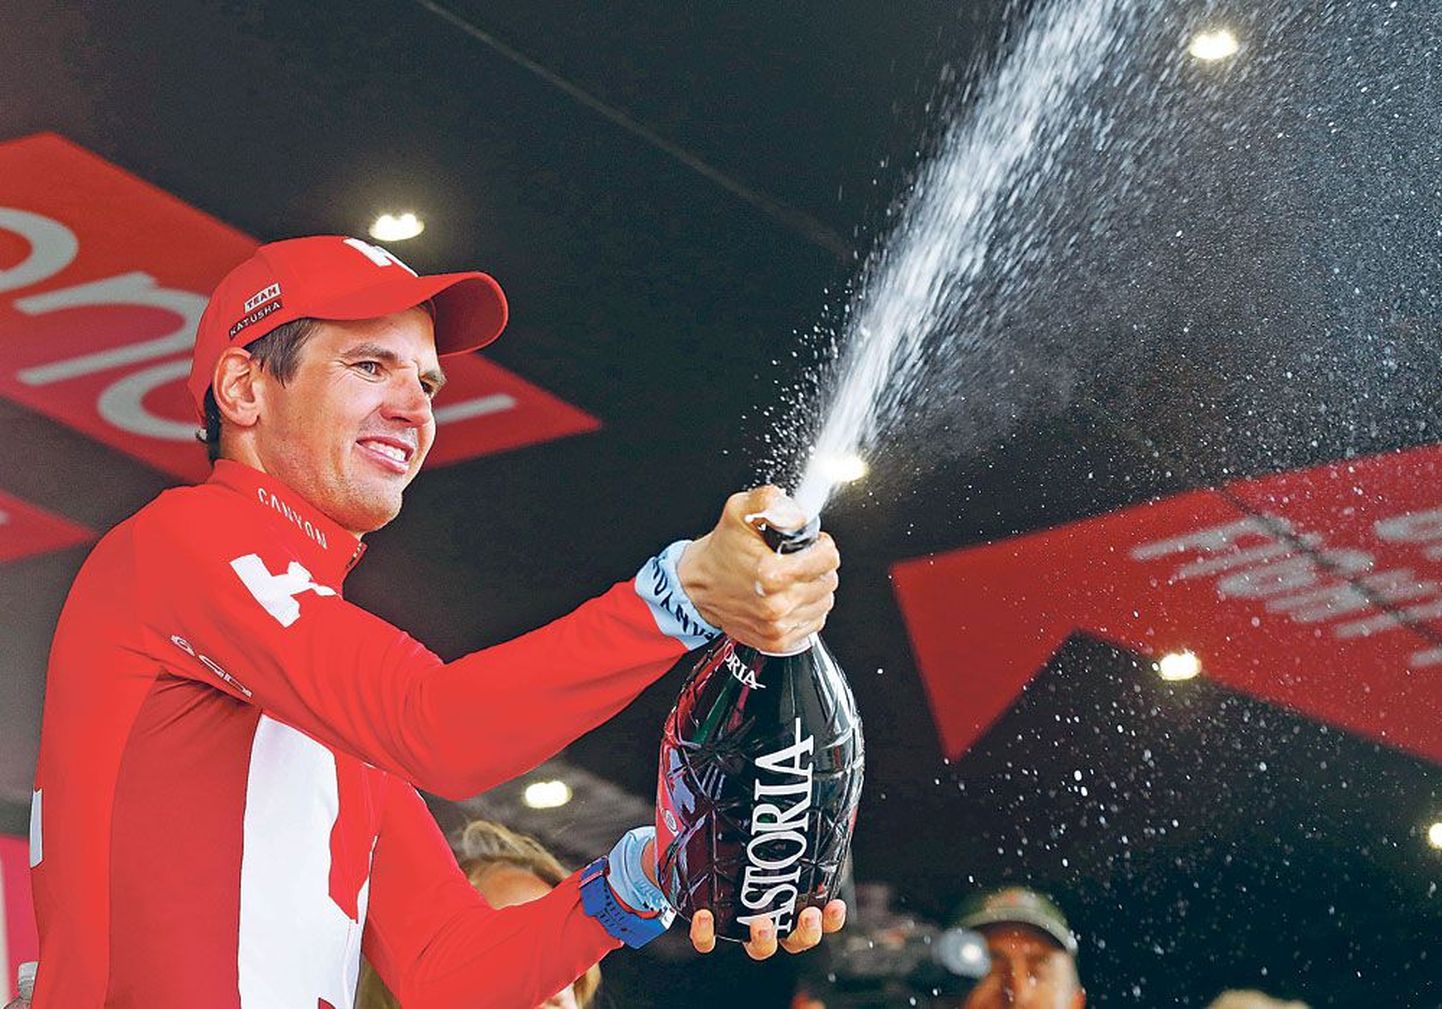 Рейн Таарамяэ после пятилетнего перерыва вновь открыл шампанское. На этот раз после победы на этапе Giro d’Italia.